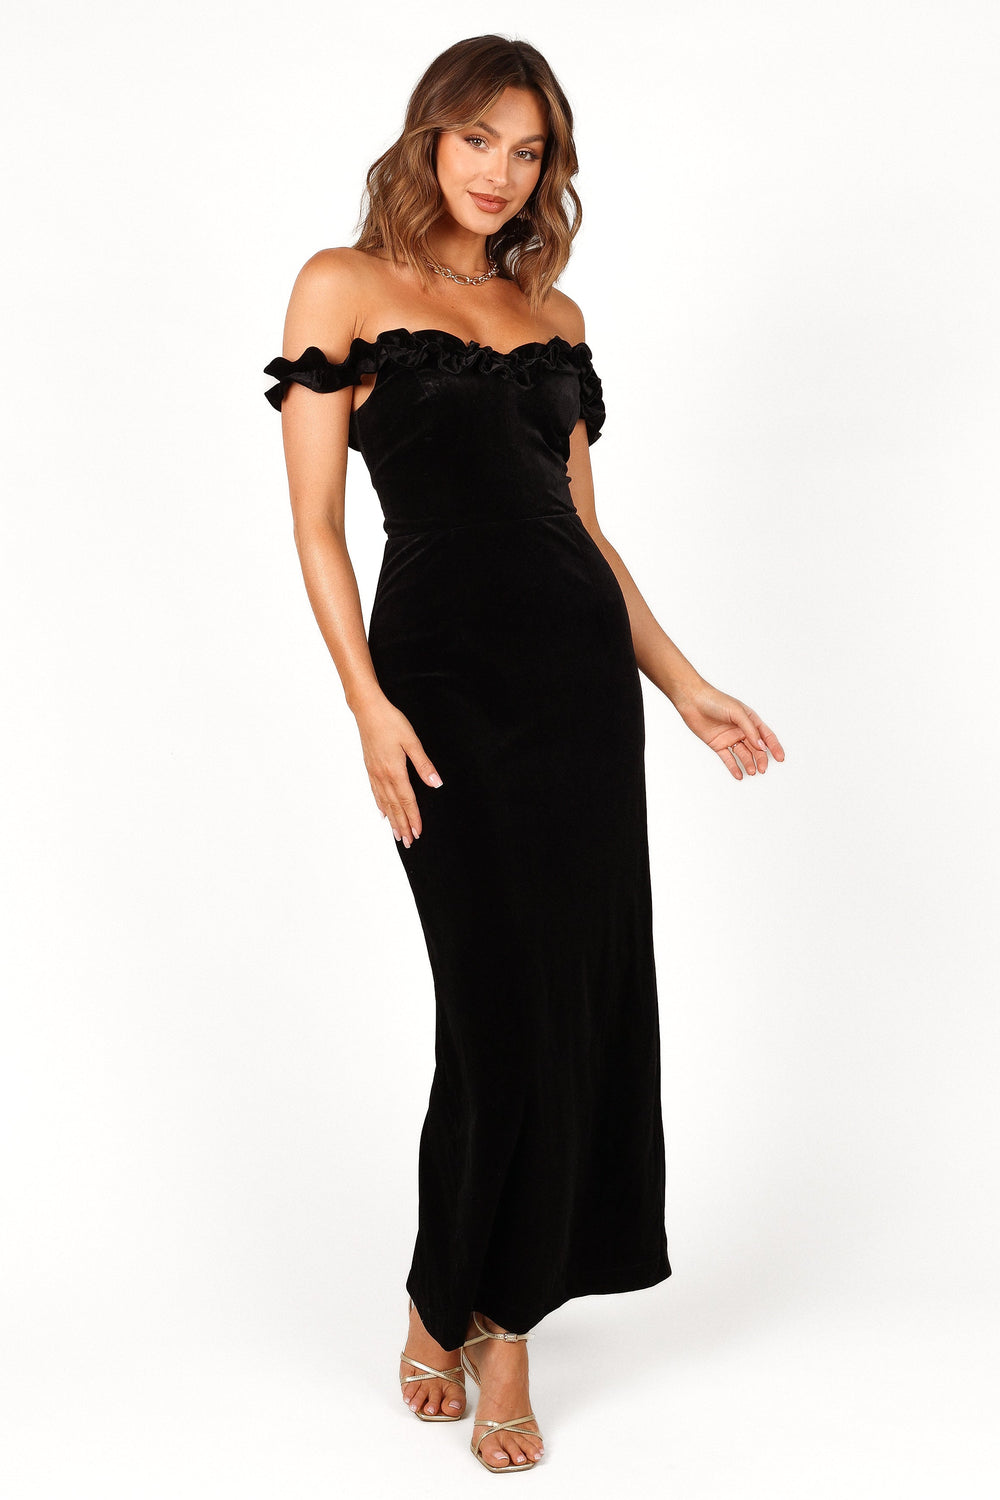 Petal and Pup USA DRESSES Celeste Off Shoulder Velvet Maxi Dress - Black